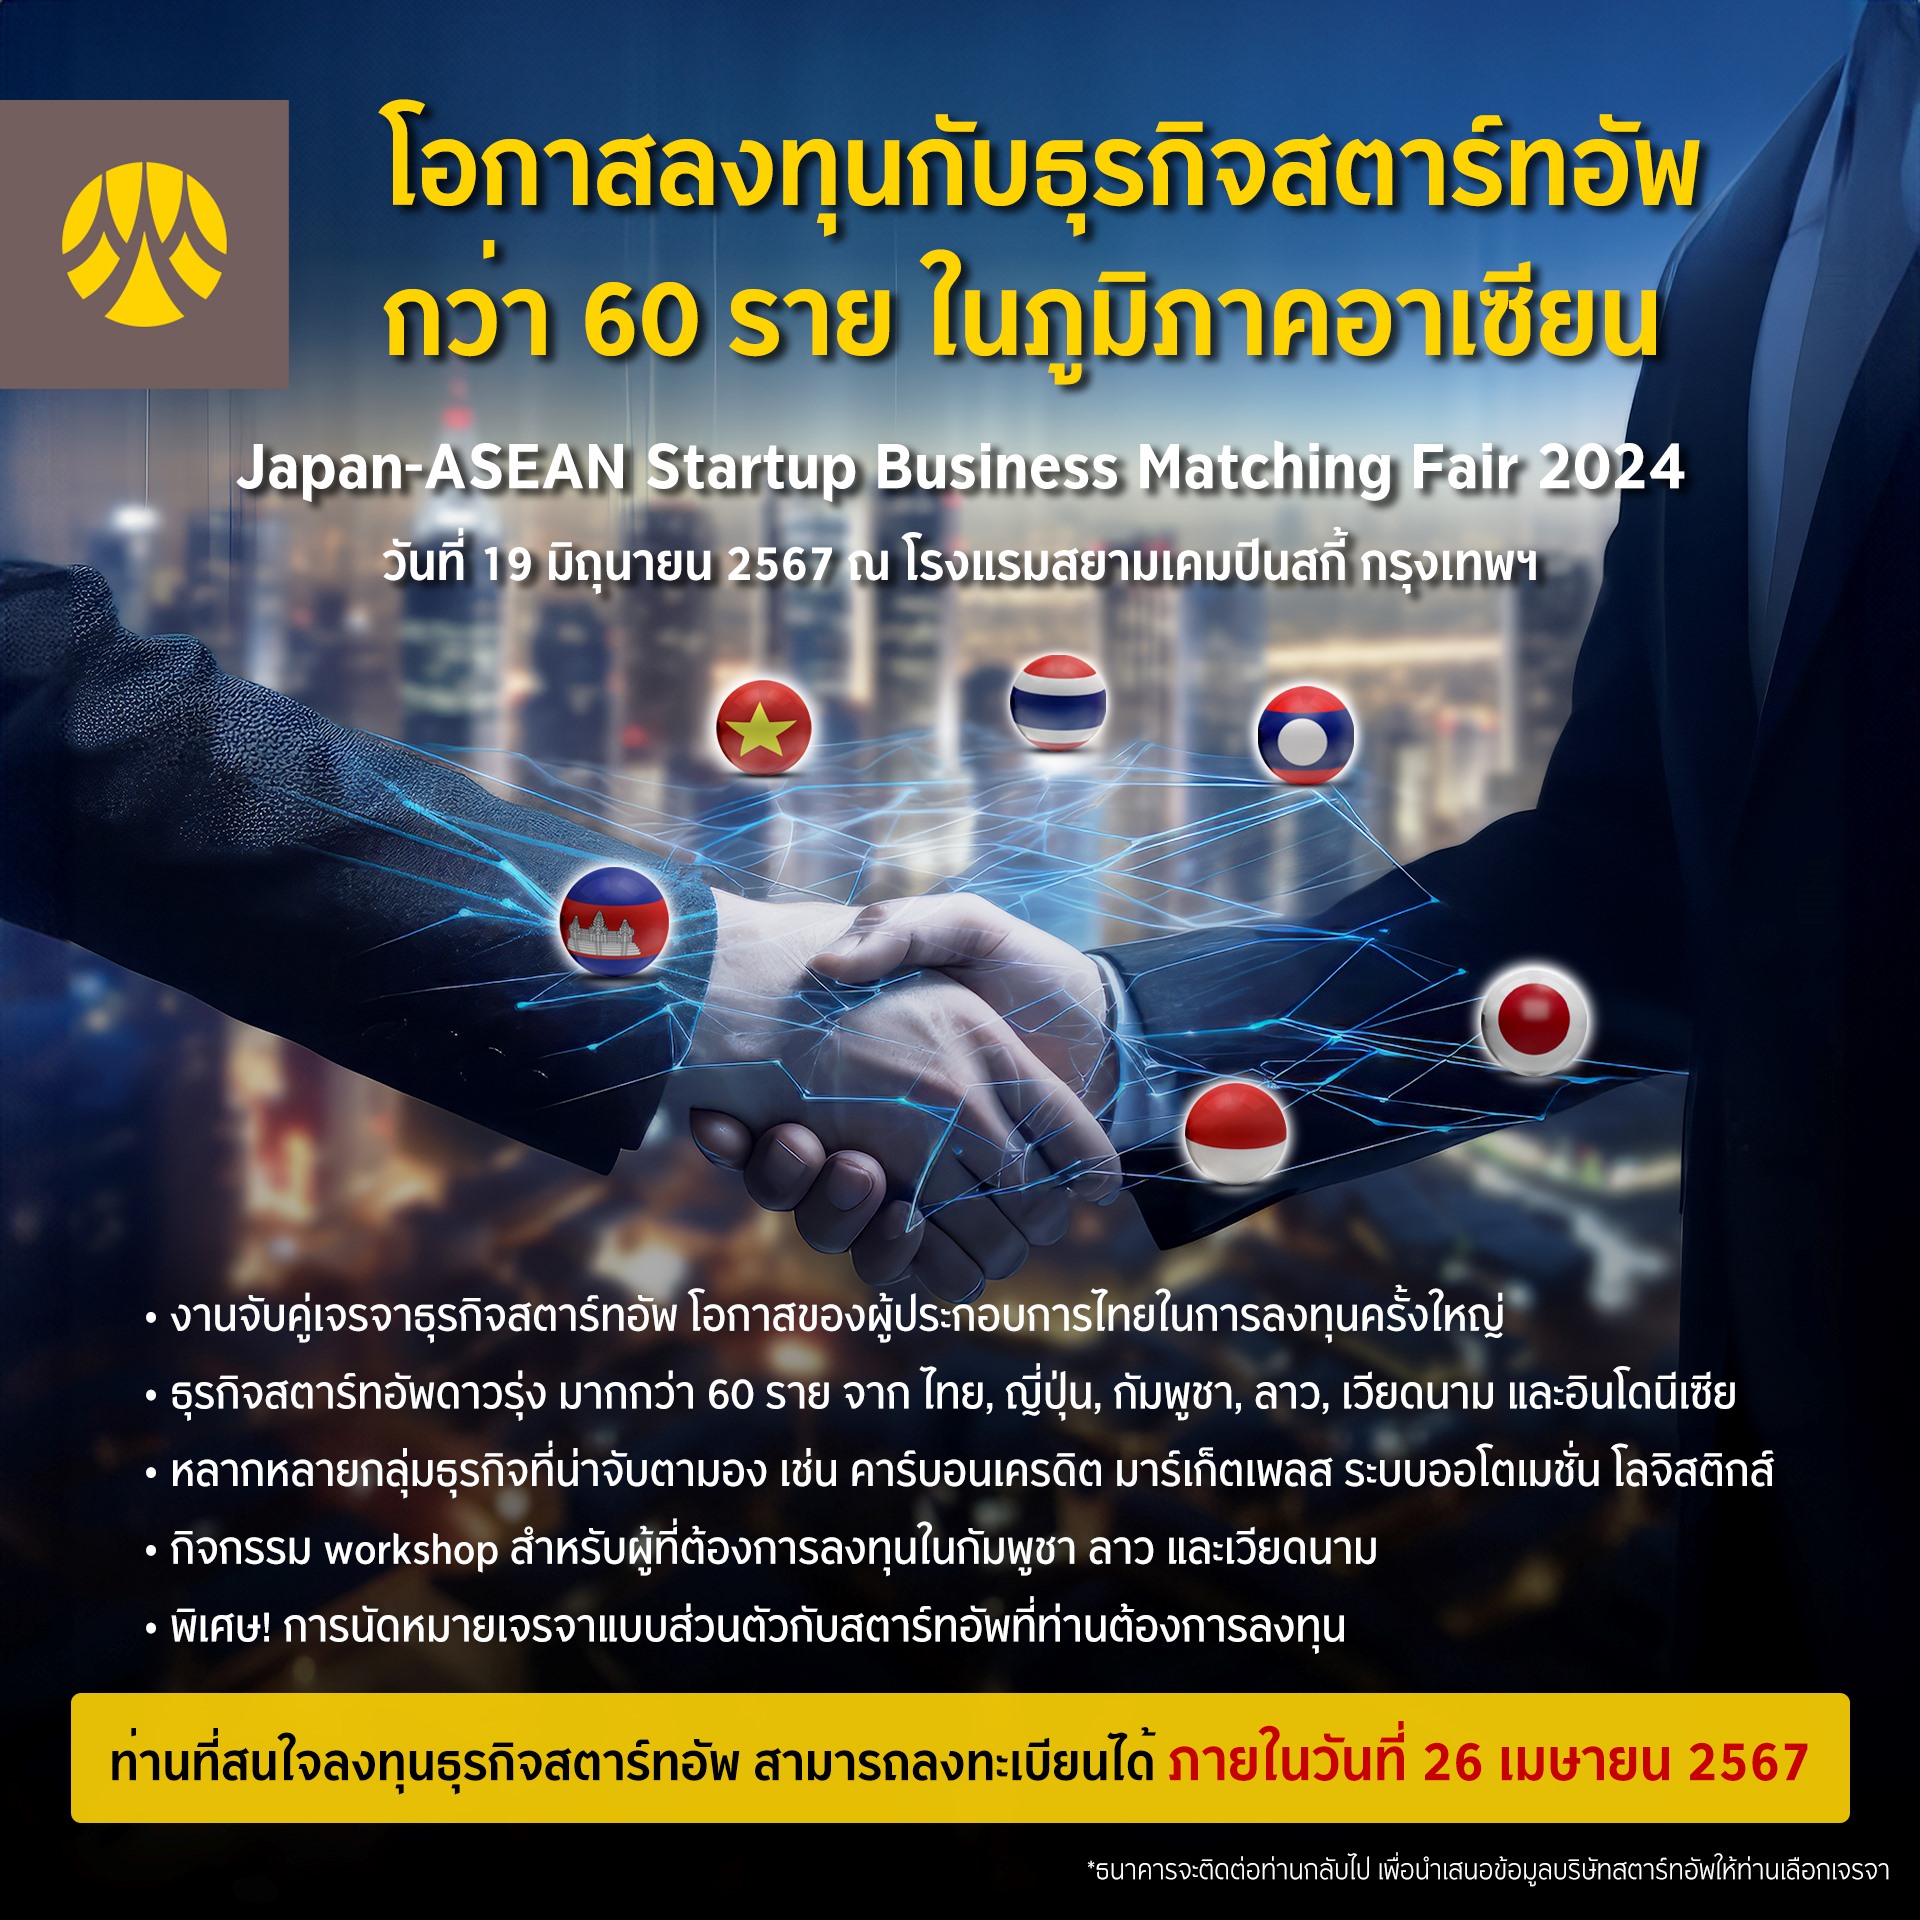 โอกาสลงทุนกับ Startup ครั้งใหญ่ ในงาน Japan-ASEAN Startup Business Matching Fair 2024